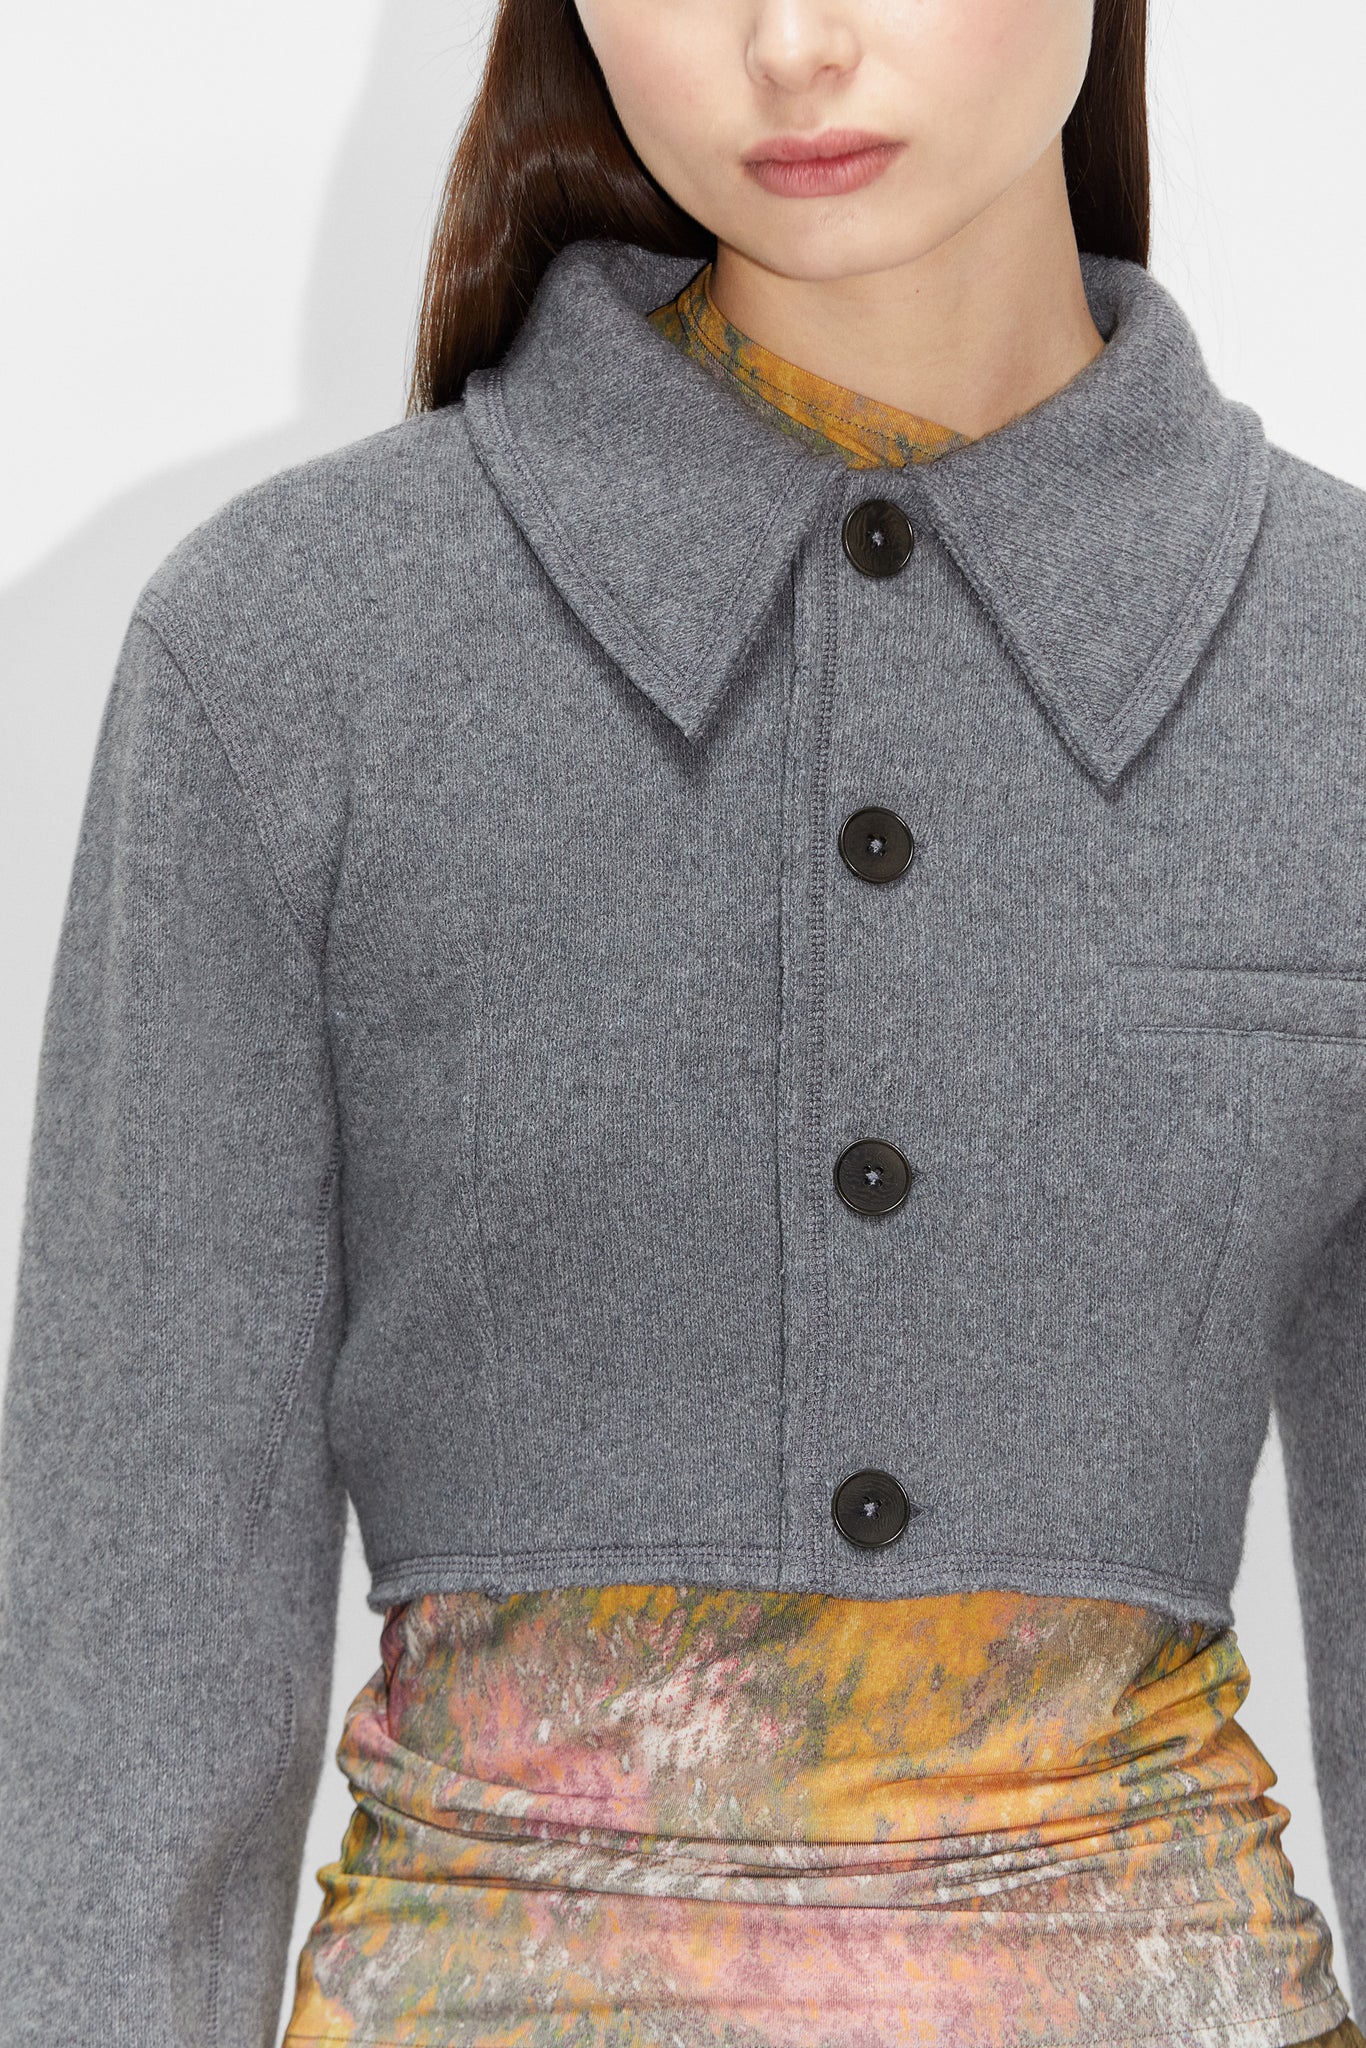 STHLM HOPE Cropped Grey in Melange Wool – Overshirt